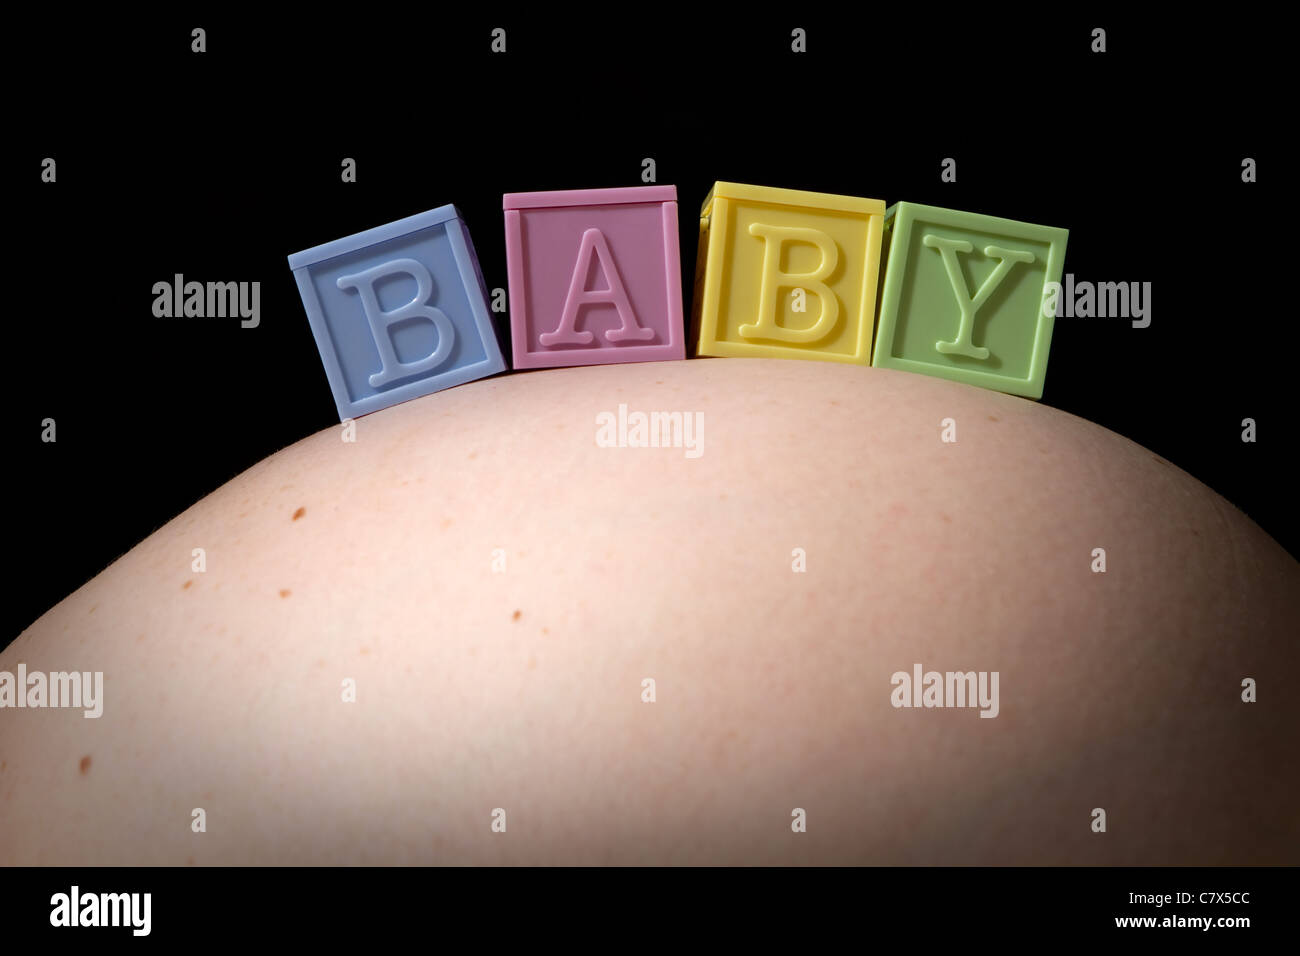 Vier bunte Buchstaben Baby Blocks buchstabieren das Wort BABY wie sie auf geschwollenen Bauch einer schwangeren Frau sitzen. Stockfoto